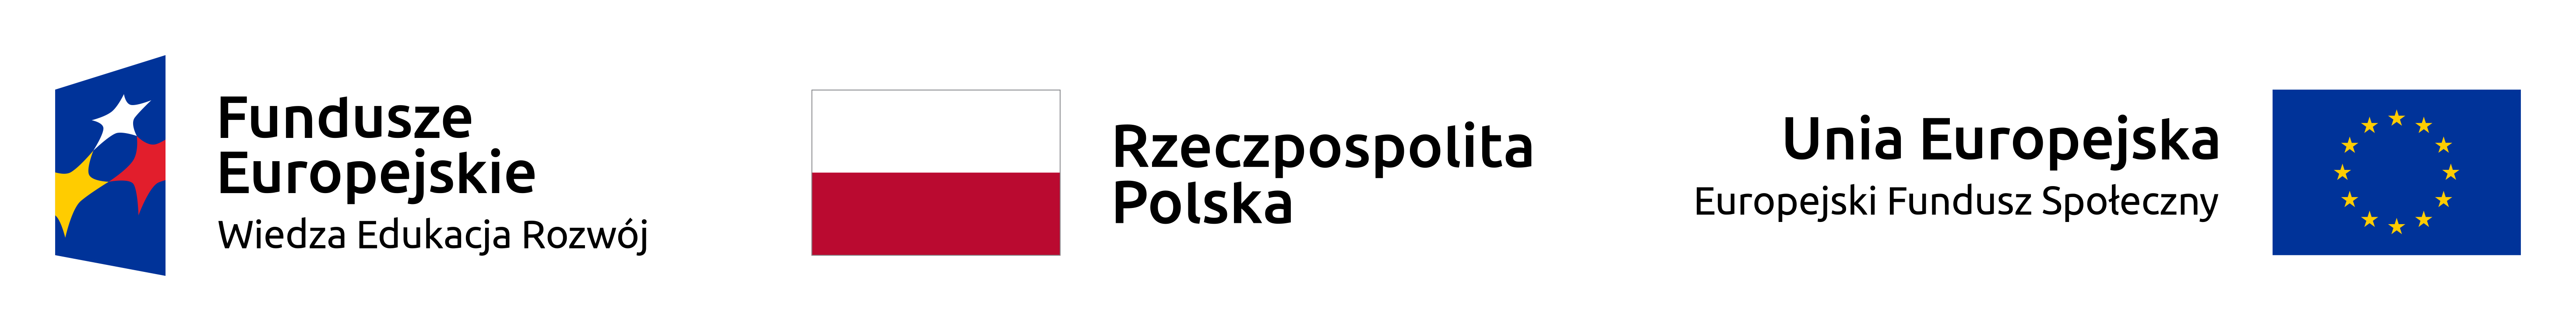 Logotypy: Fundusze Europejskie Wiedza Edukacja Rozwój, Rzeczpospolita Polska, Unia Europejska Europejski Fundusz Społeczny